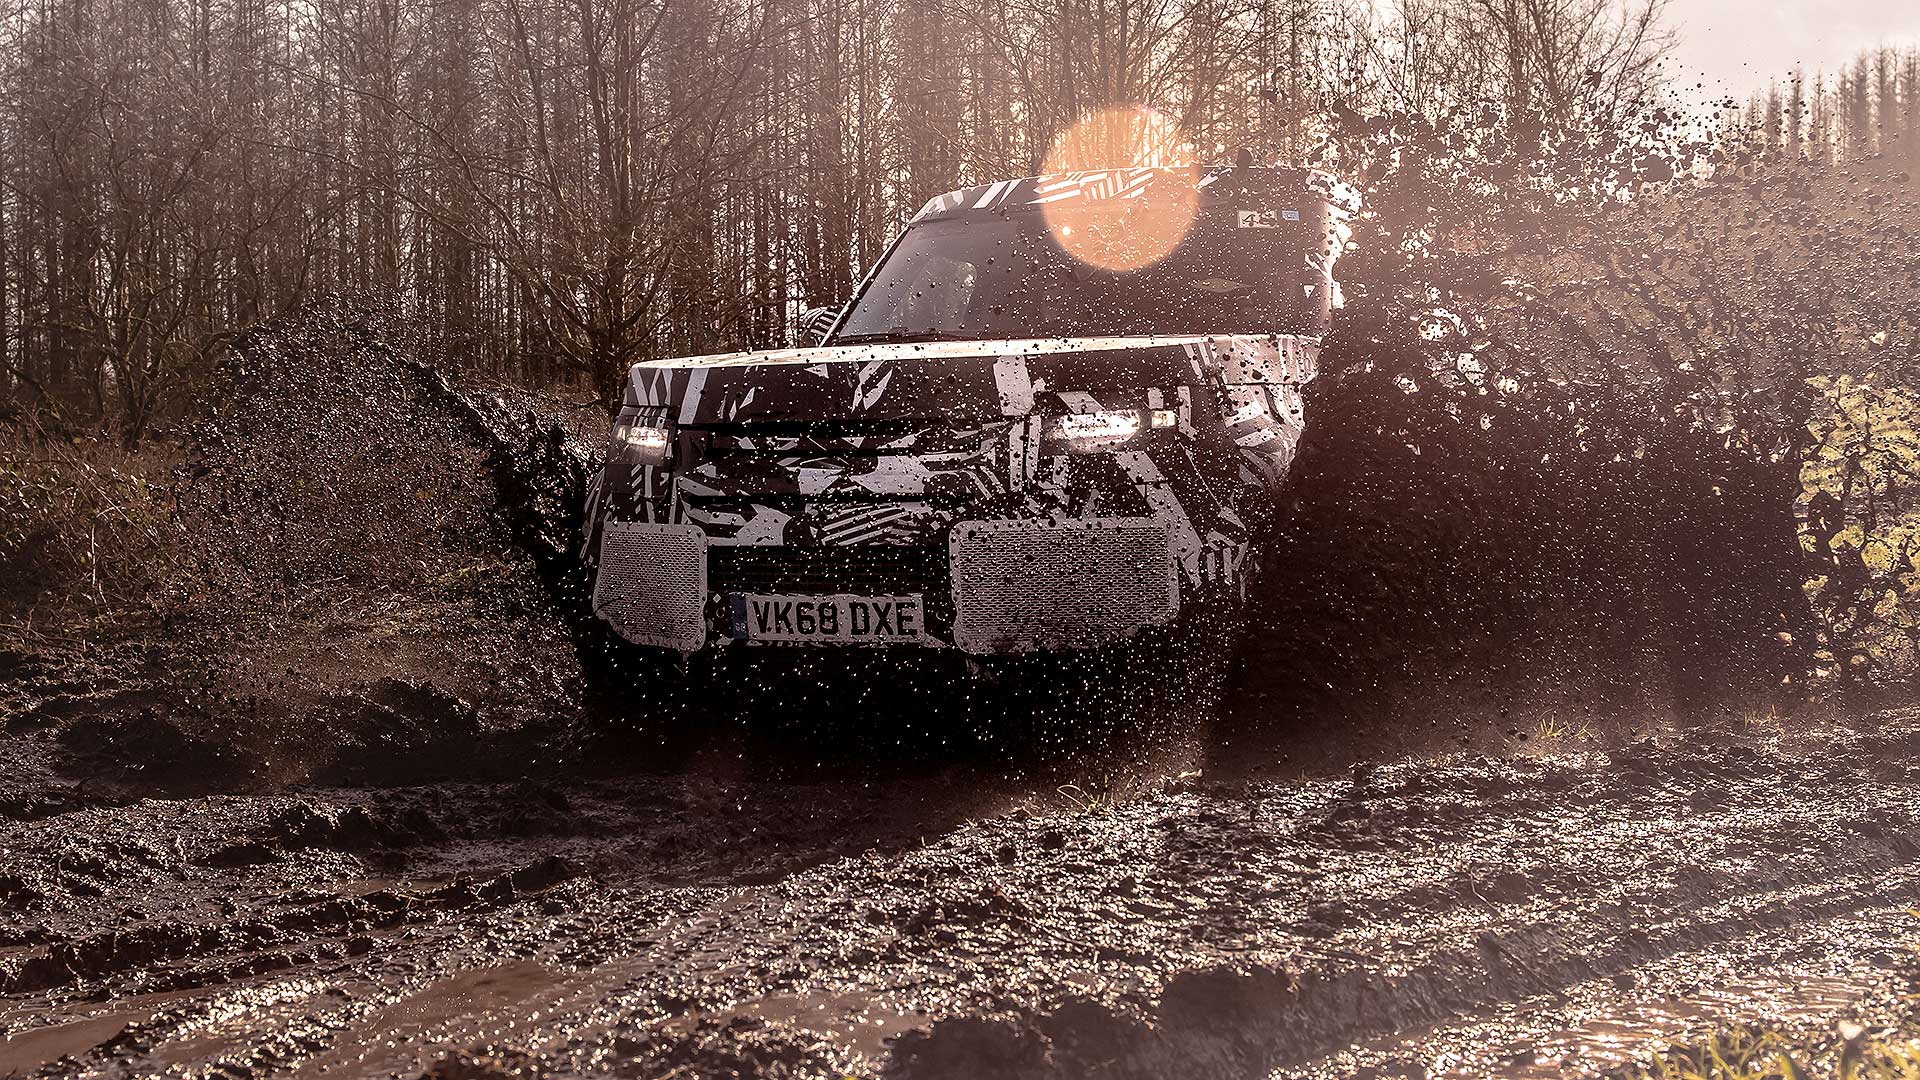 Land Rover Defender 2020 testing off-road